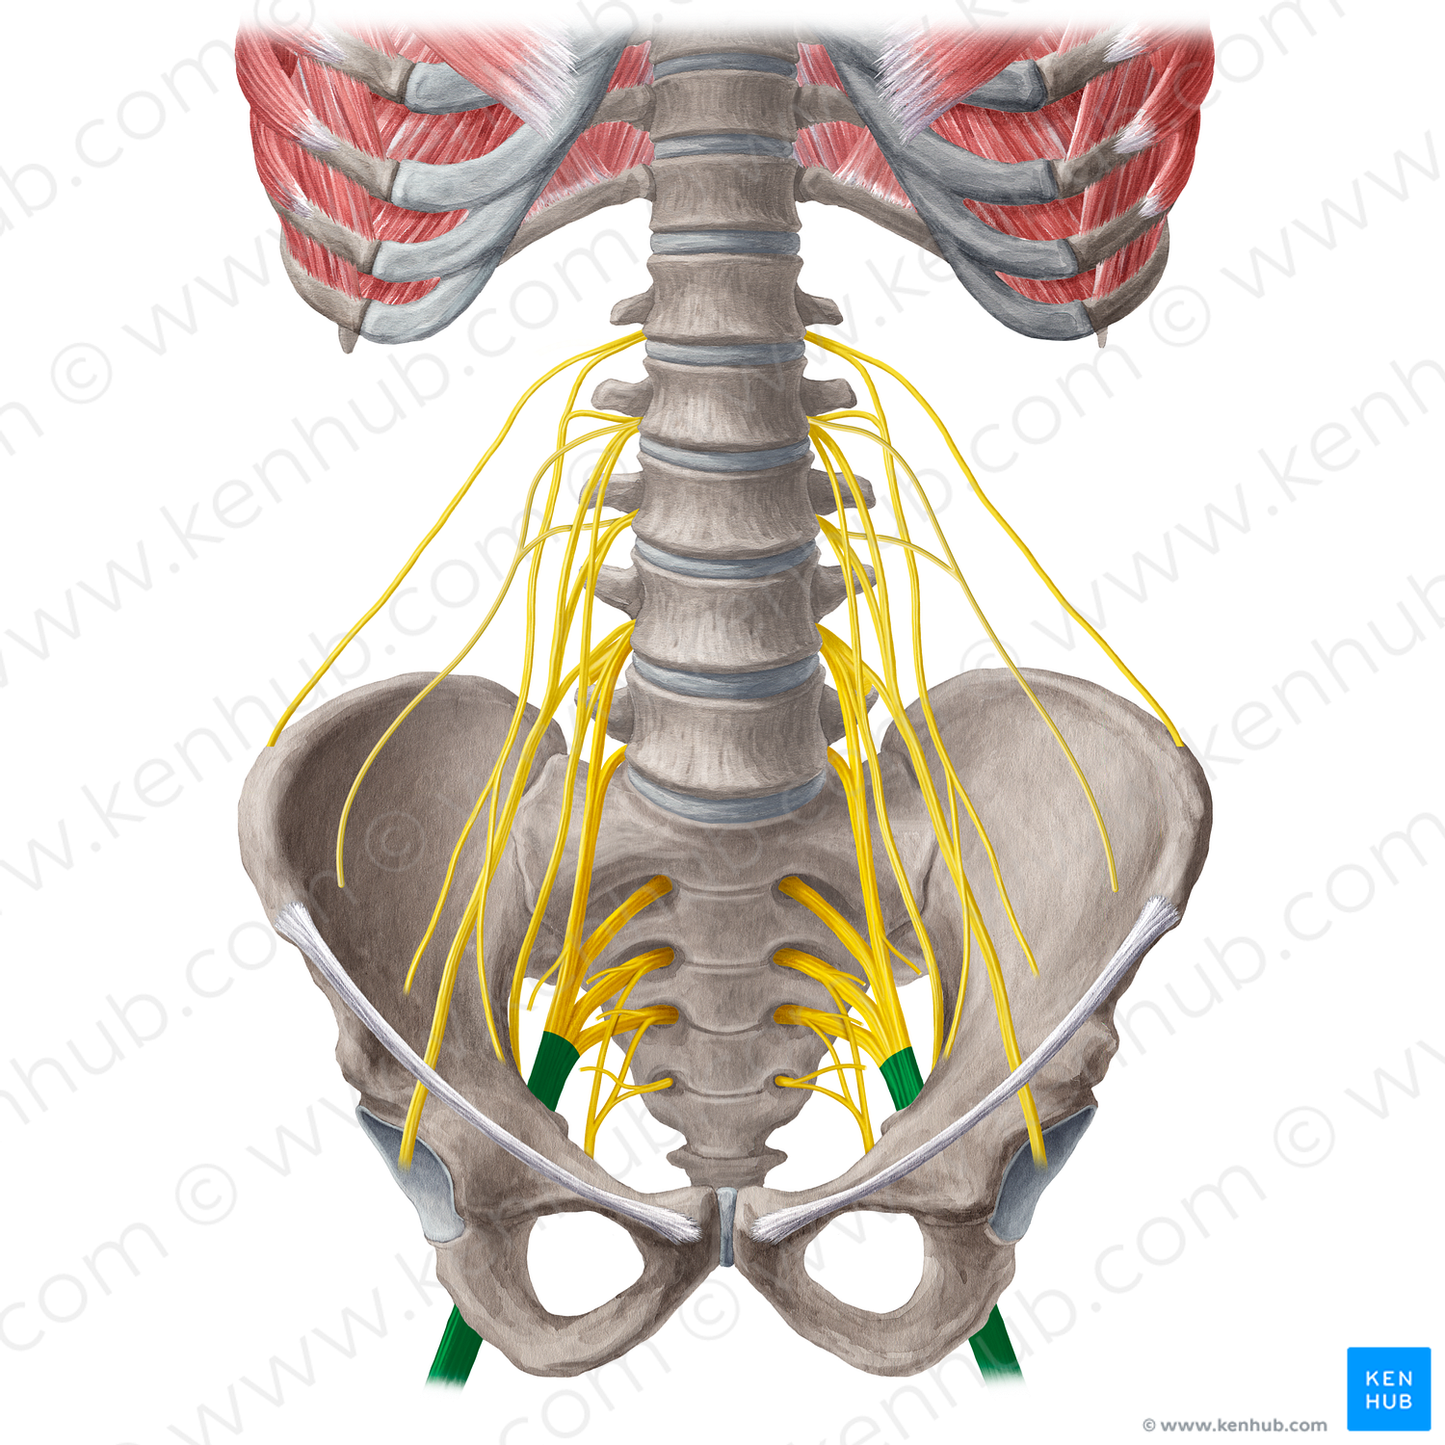 Sciatic nerve (#21573)